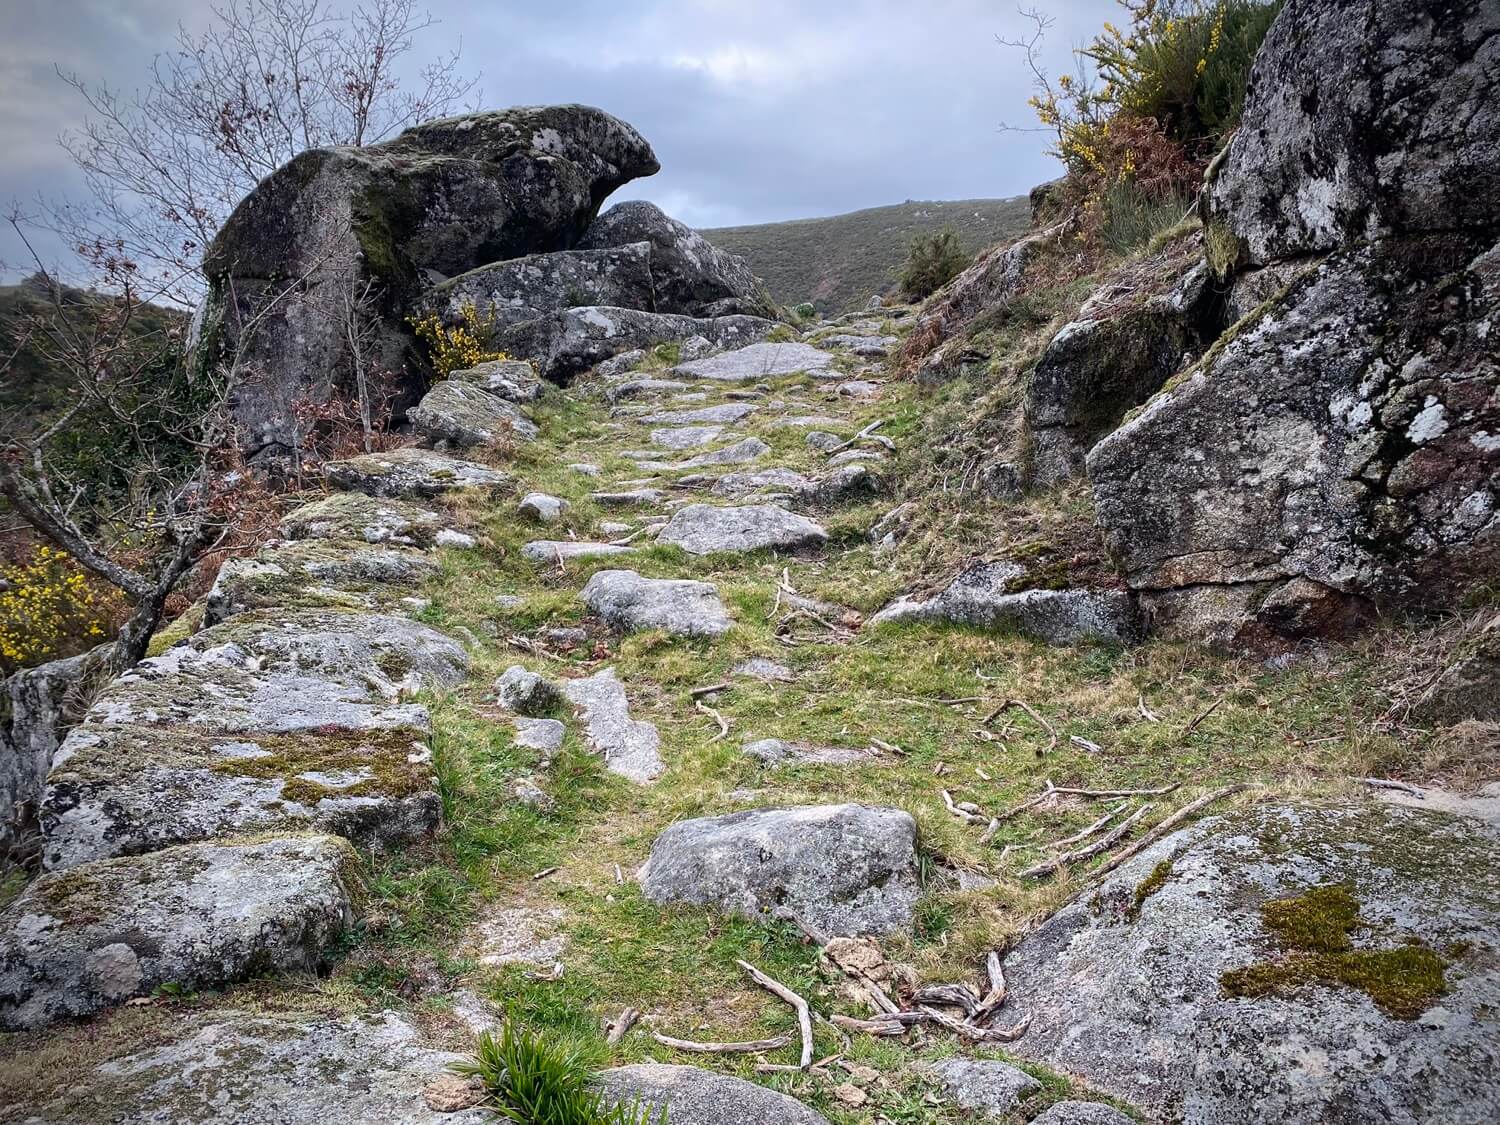 Ruta dos Chozos Guíate Galicia